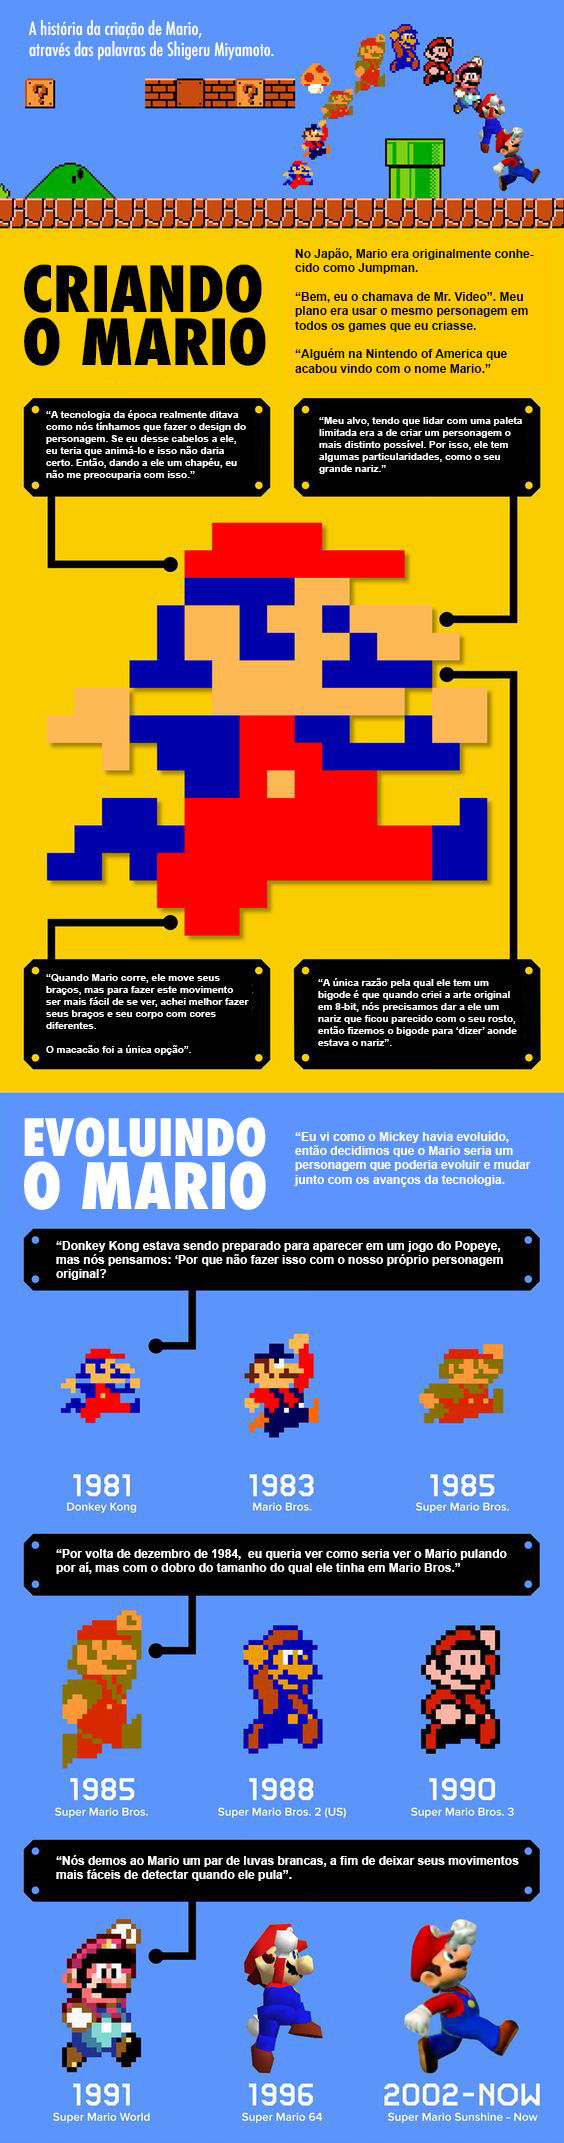 Infográfico - A criação de Mario, nas palavras de Shigeru Miyamoto